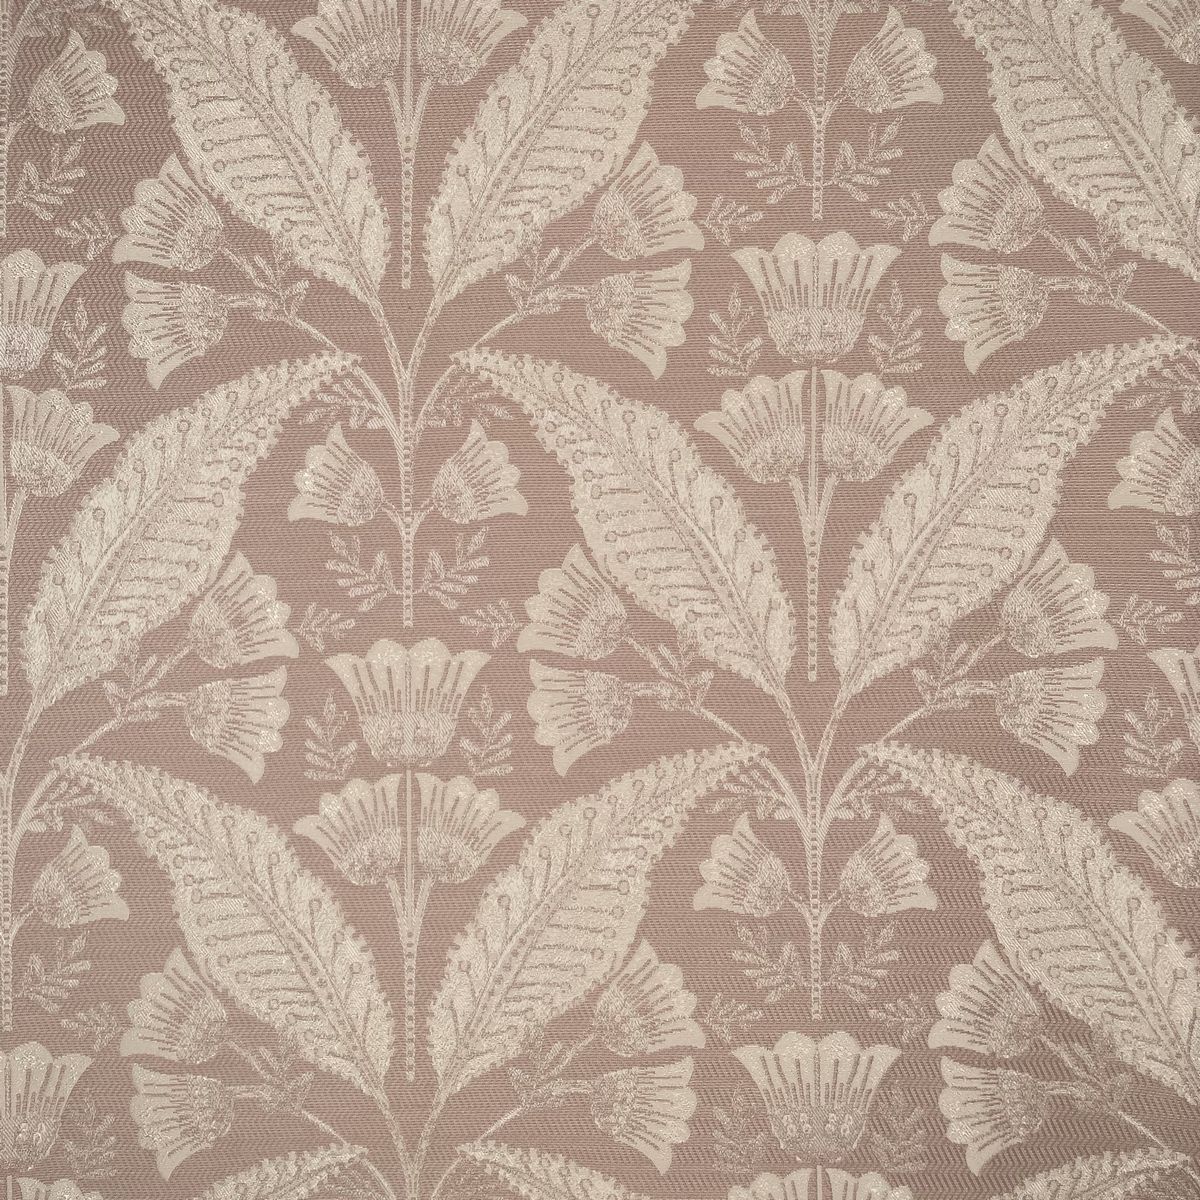 Burghley Blush Fabric by Chatham Glyn